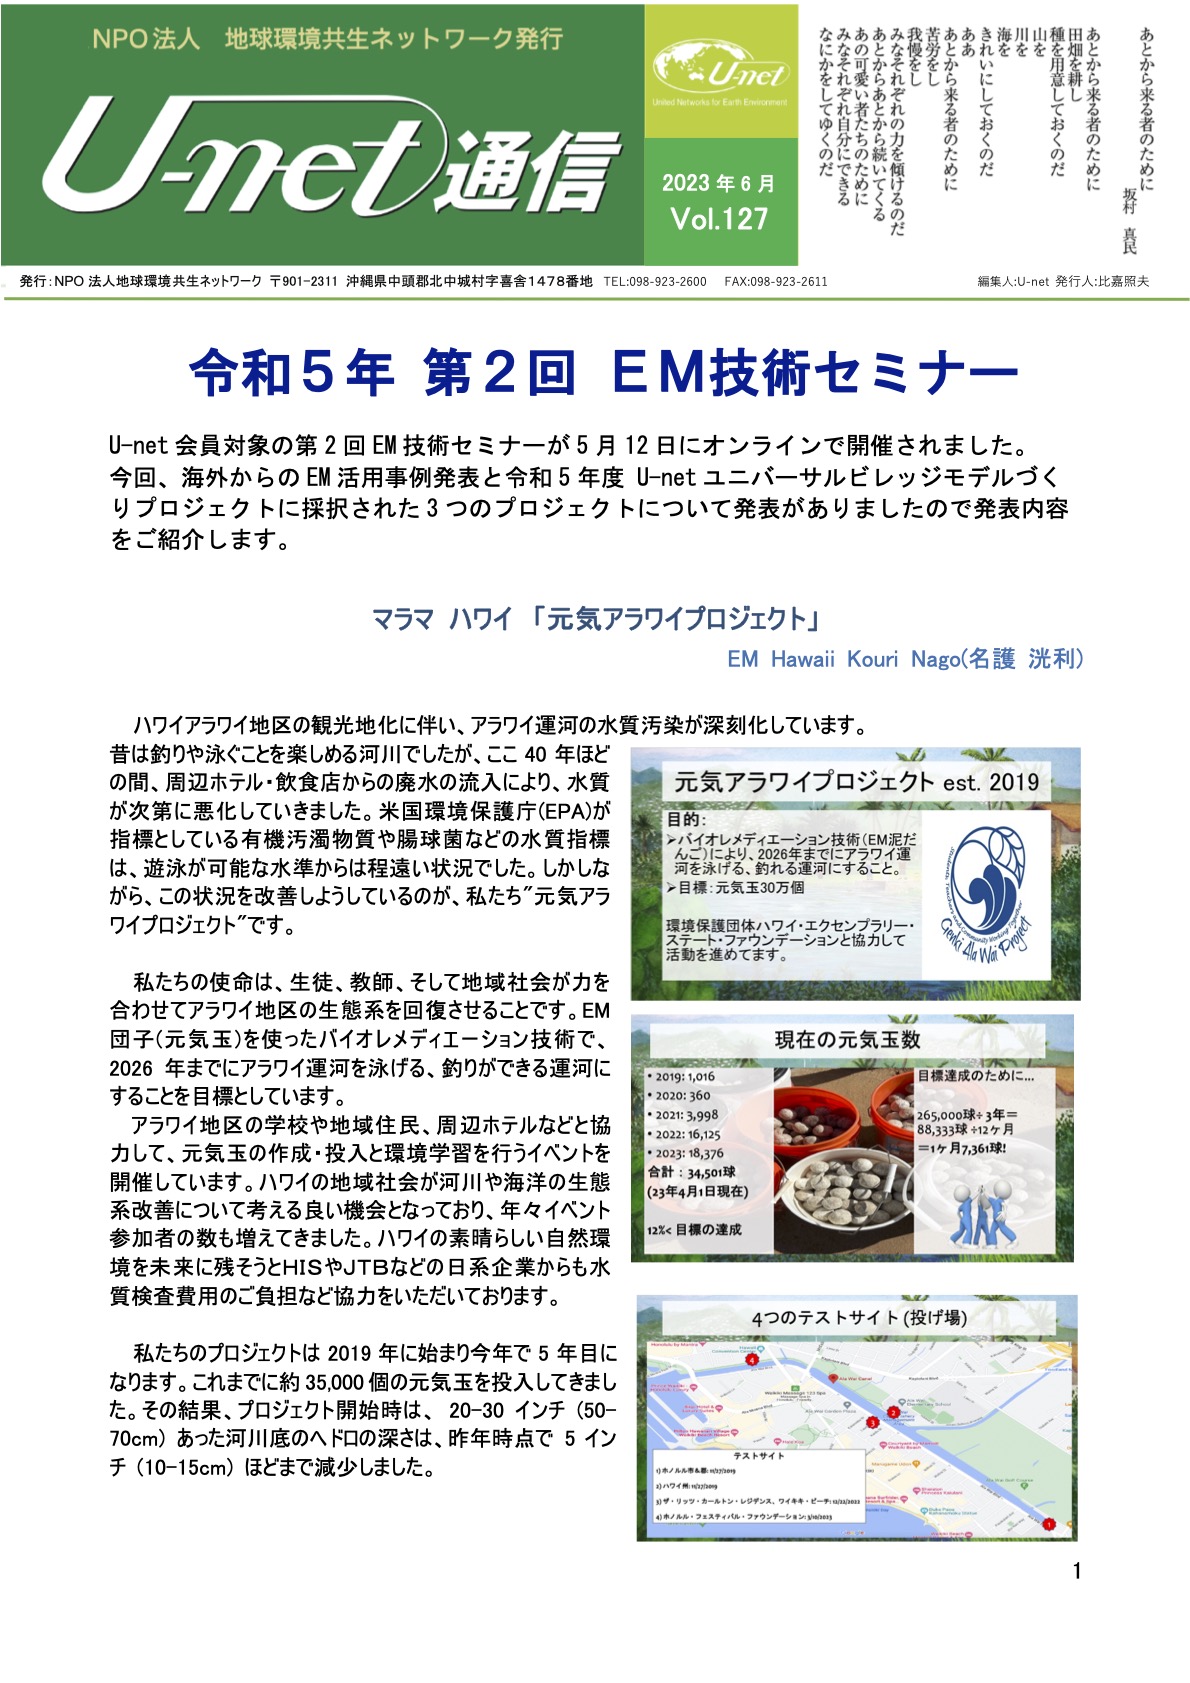 【お知らせ】地球環境共生ネットワーク会報誌「U-net通信」6月発行号（第127号）をリリースしました　| 地球環境共生ネットワーク（U-net）